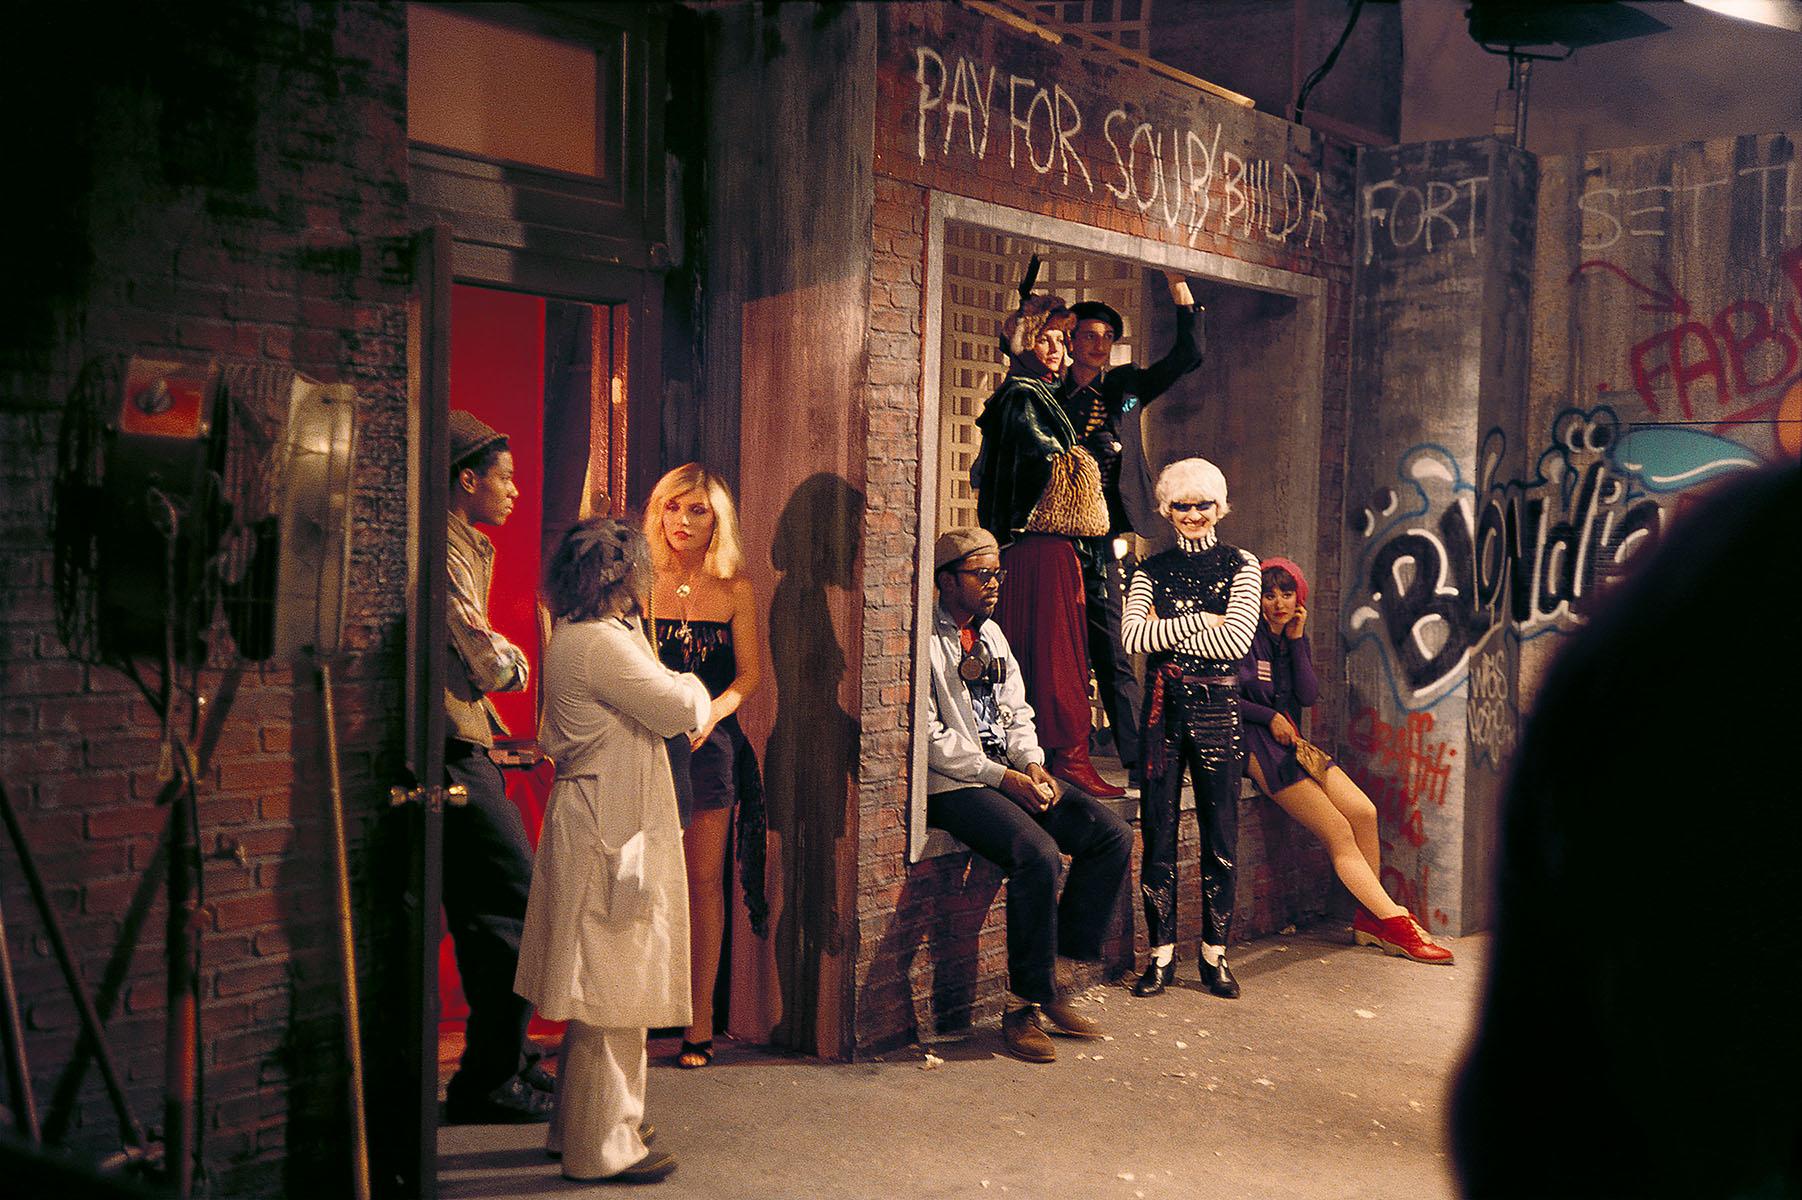 Charlie Ahearn, "Entrückung" 1981:
Ein seltenes historisches Foto von Jean-Michel Basquiat, Debbie Harry und Fab 5 Freddy, aufgenommen von Wild Style-Regisseur Charlie Ahearn am Set von Blondie's "Rapture". Dieses Werk wurde kürzlich im Rahmen der